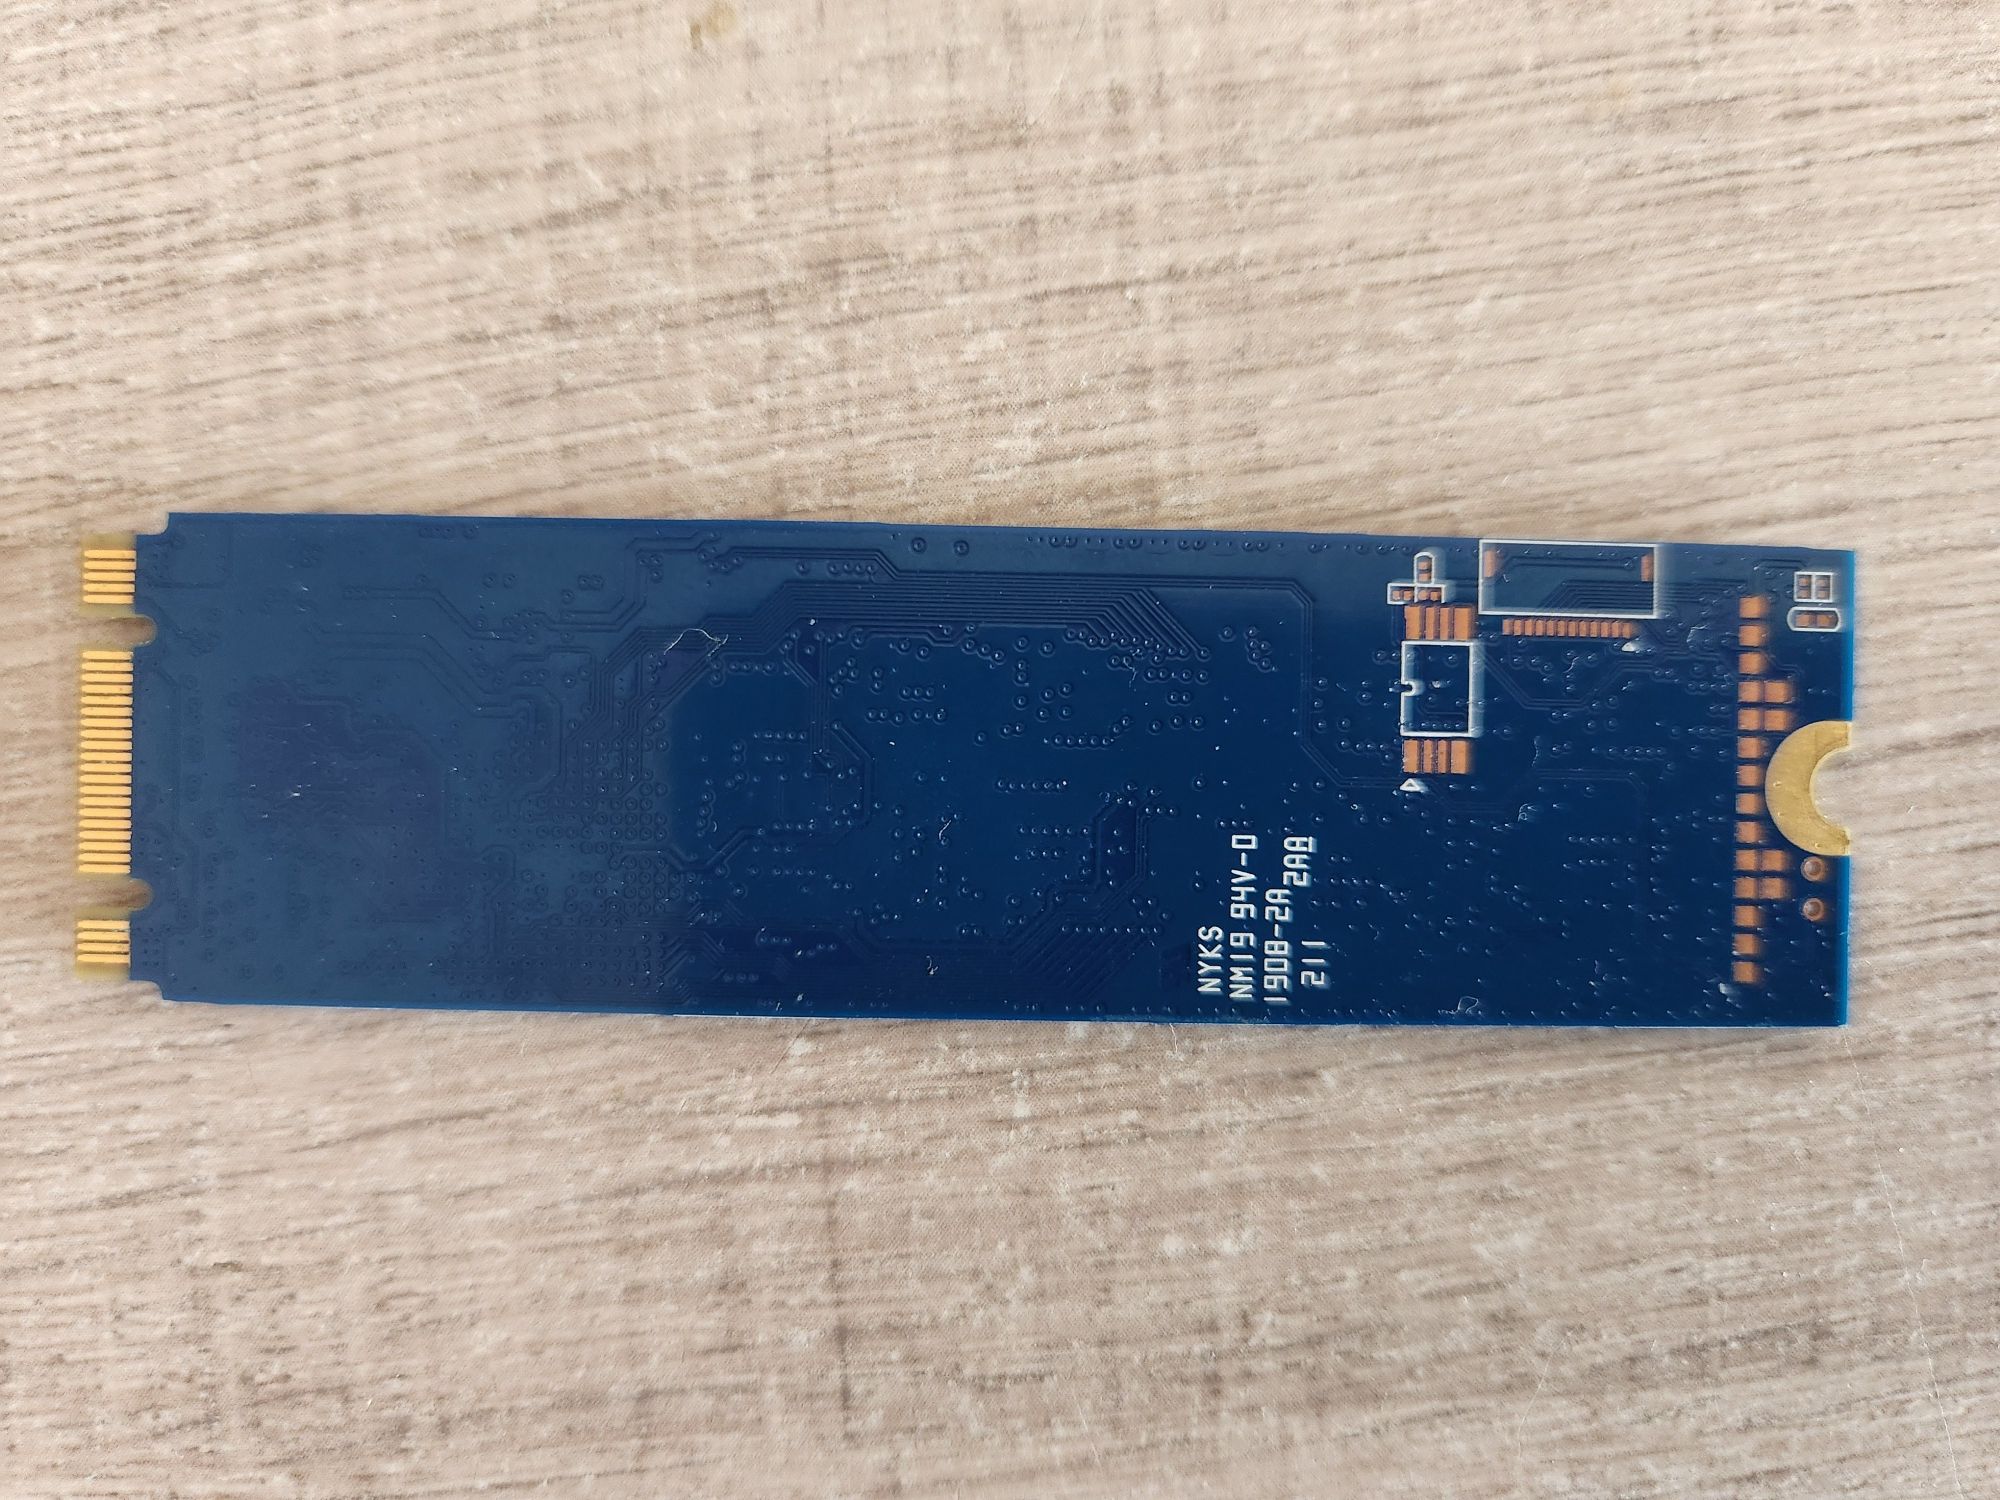 SSD диск Kingston A1000 240GB NVMe M.2 2280 PCIe 3.0 (SA1000M8/240G)